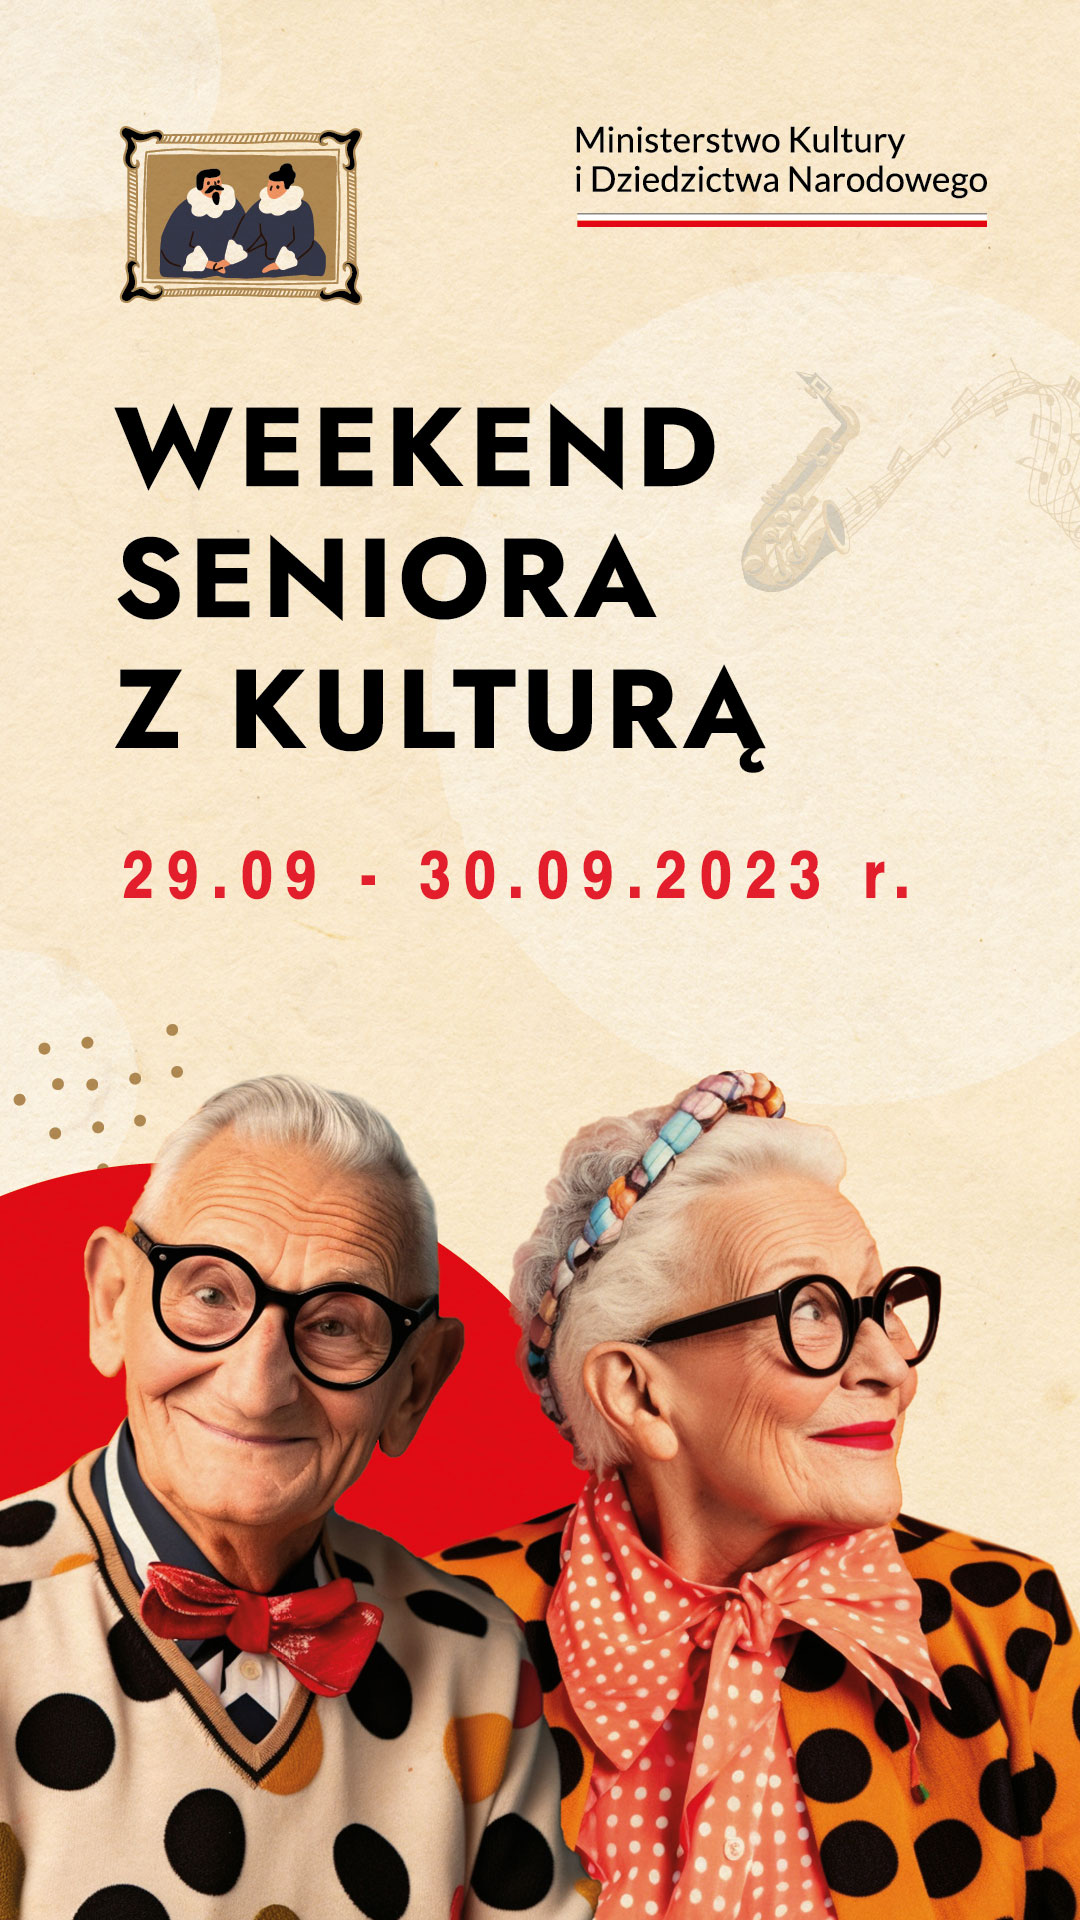 [warsztaty]: Weekend Seniora z Kulturą